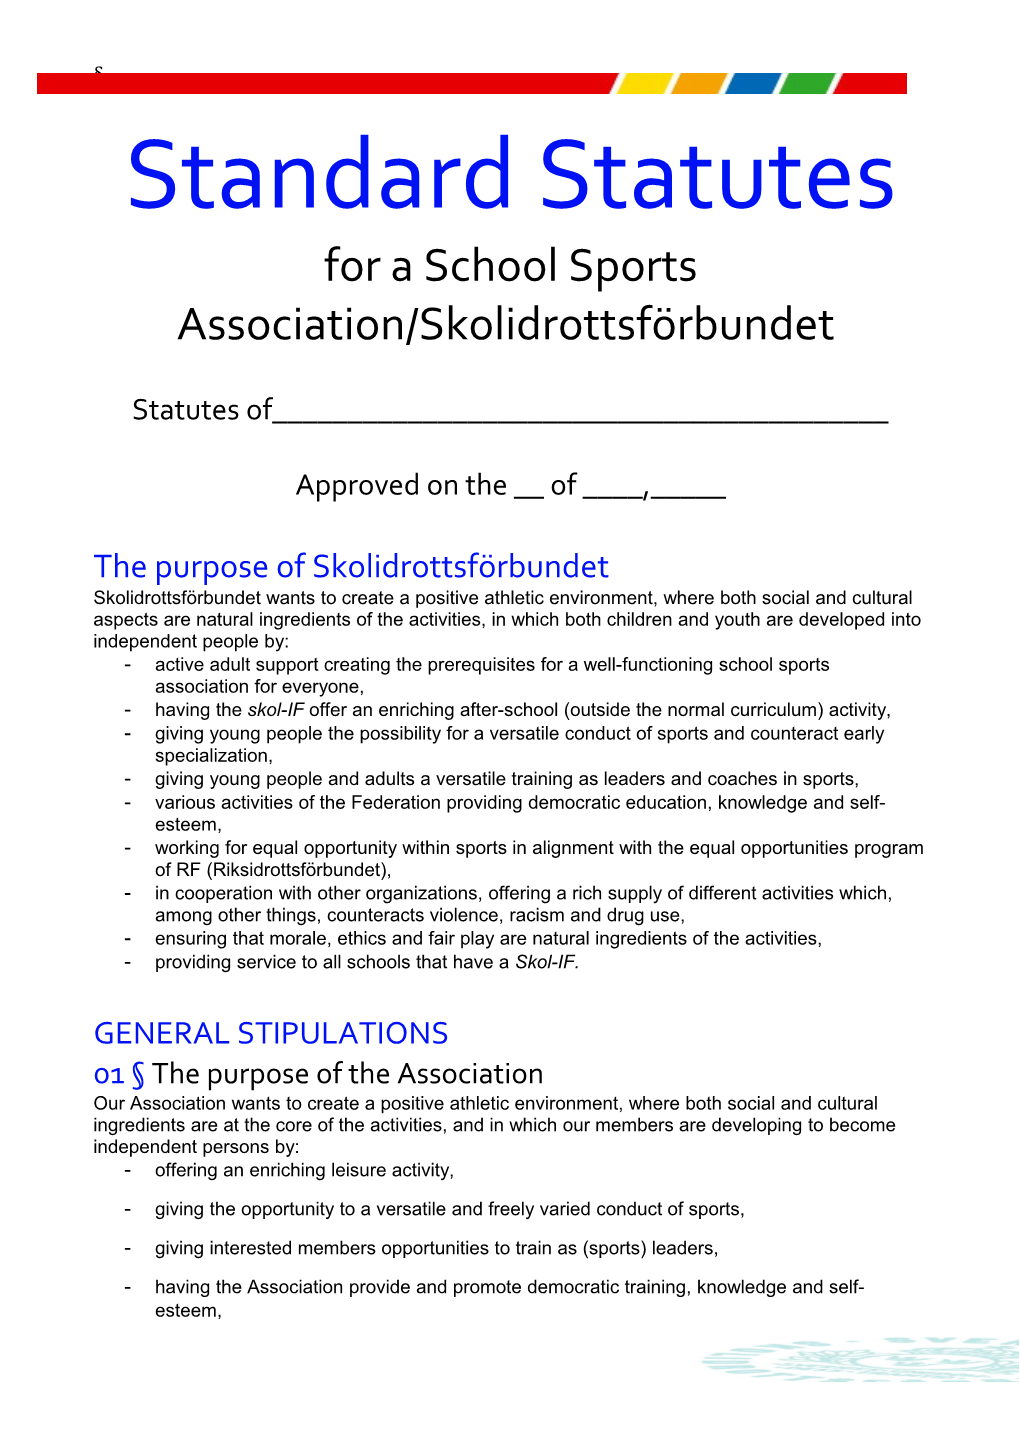 Fora School Sports Association/Skolidrottsförbundet